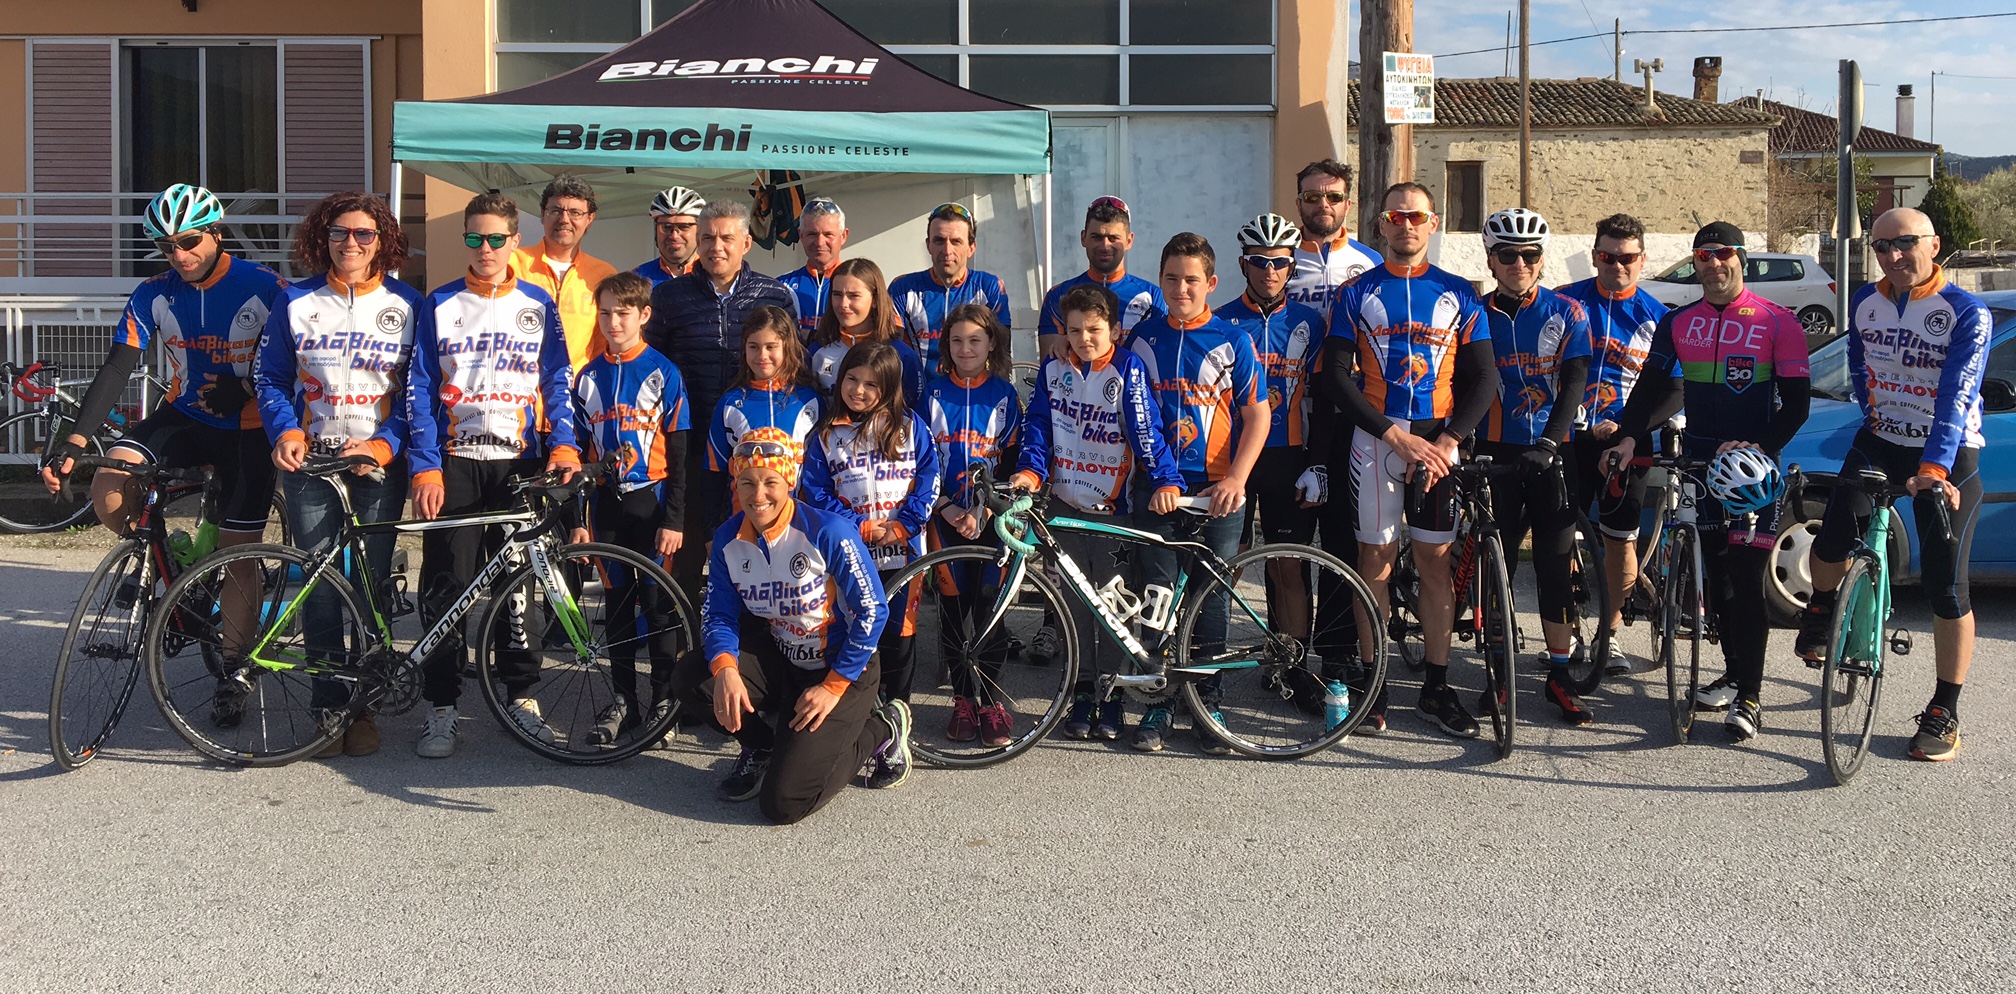 600 αθλητές συμμετείχαν στον ποδηλατικό γύρο της Λάρισας